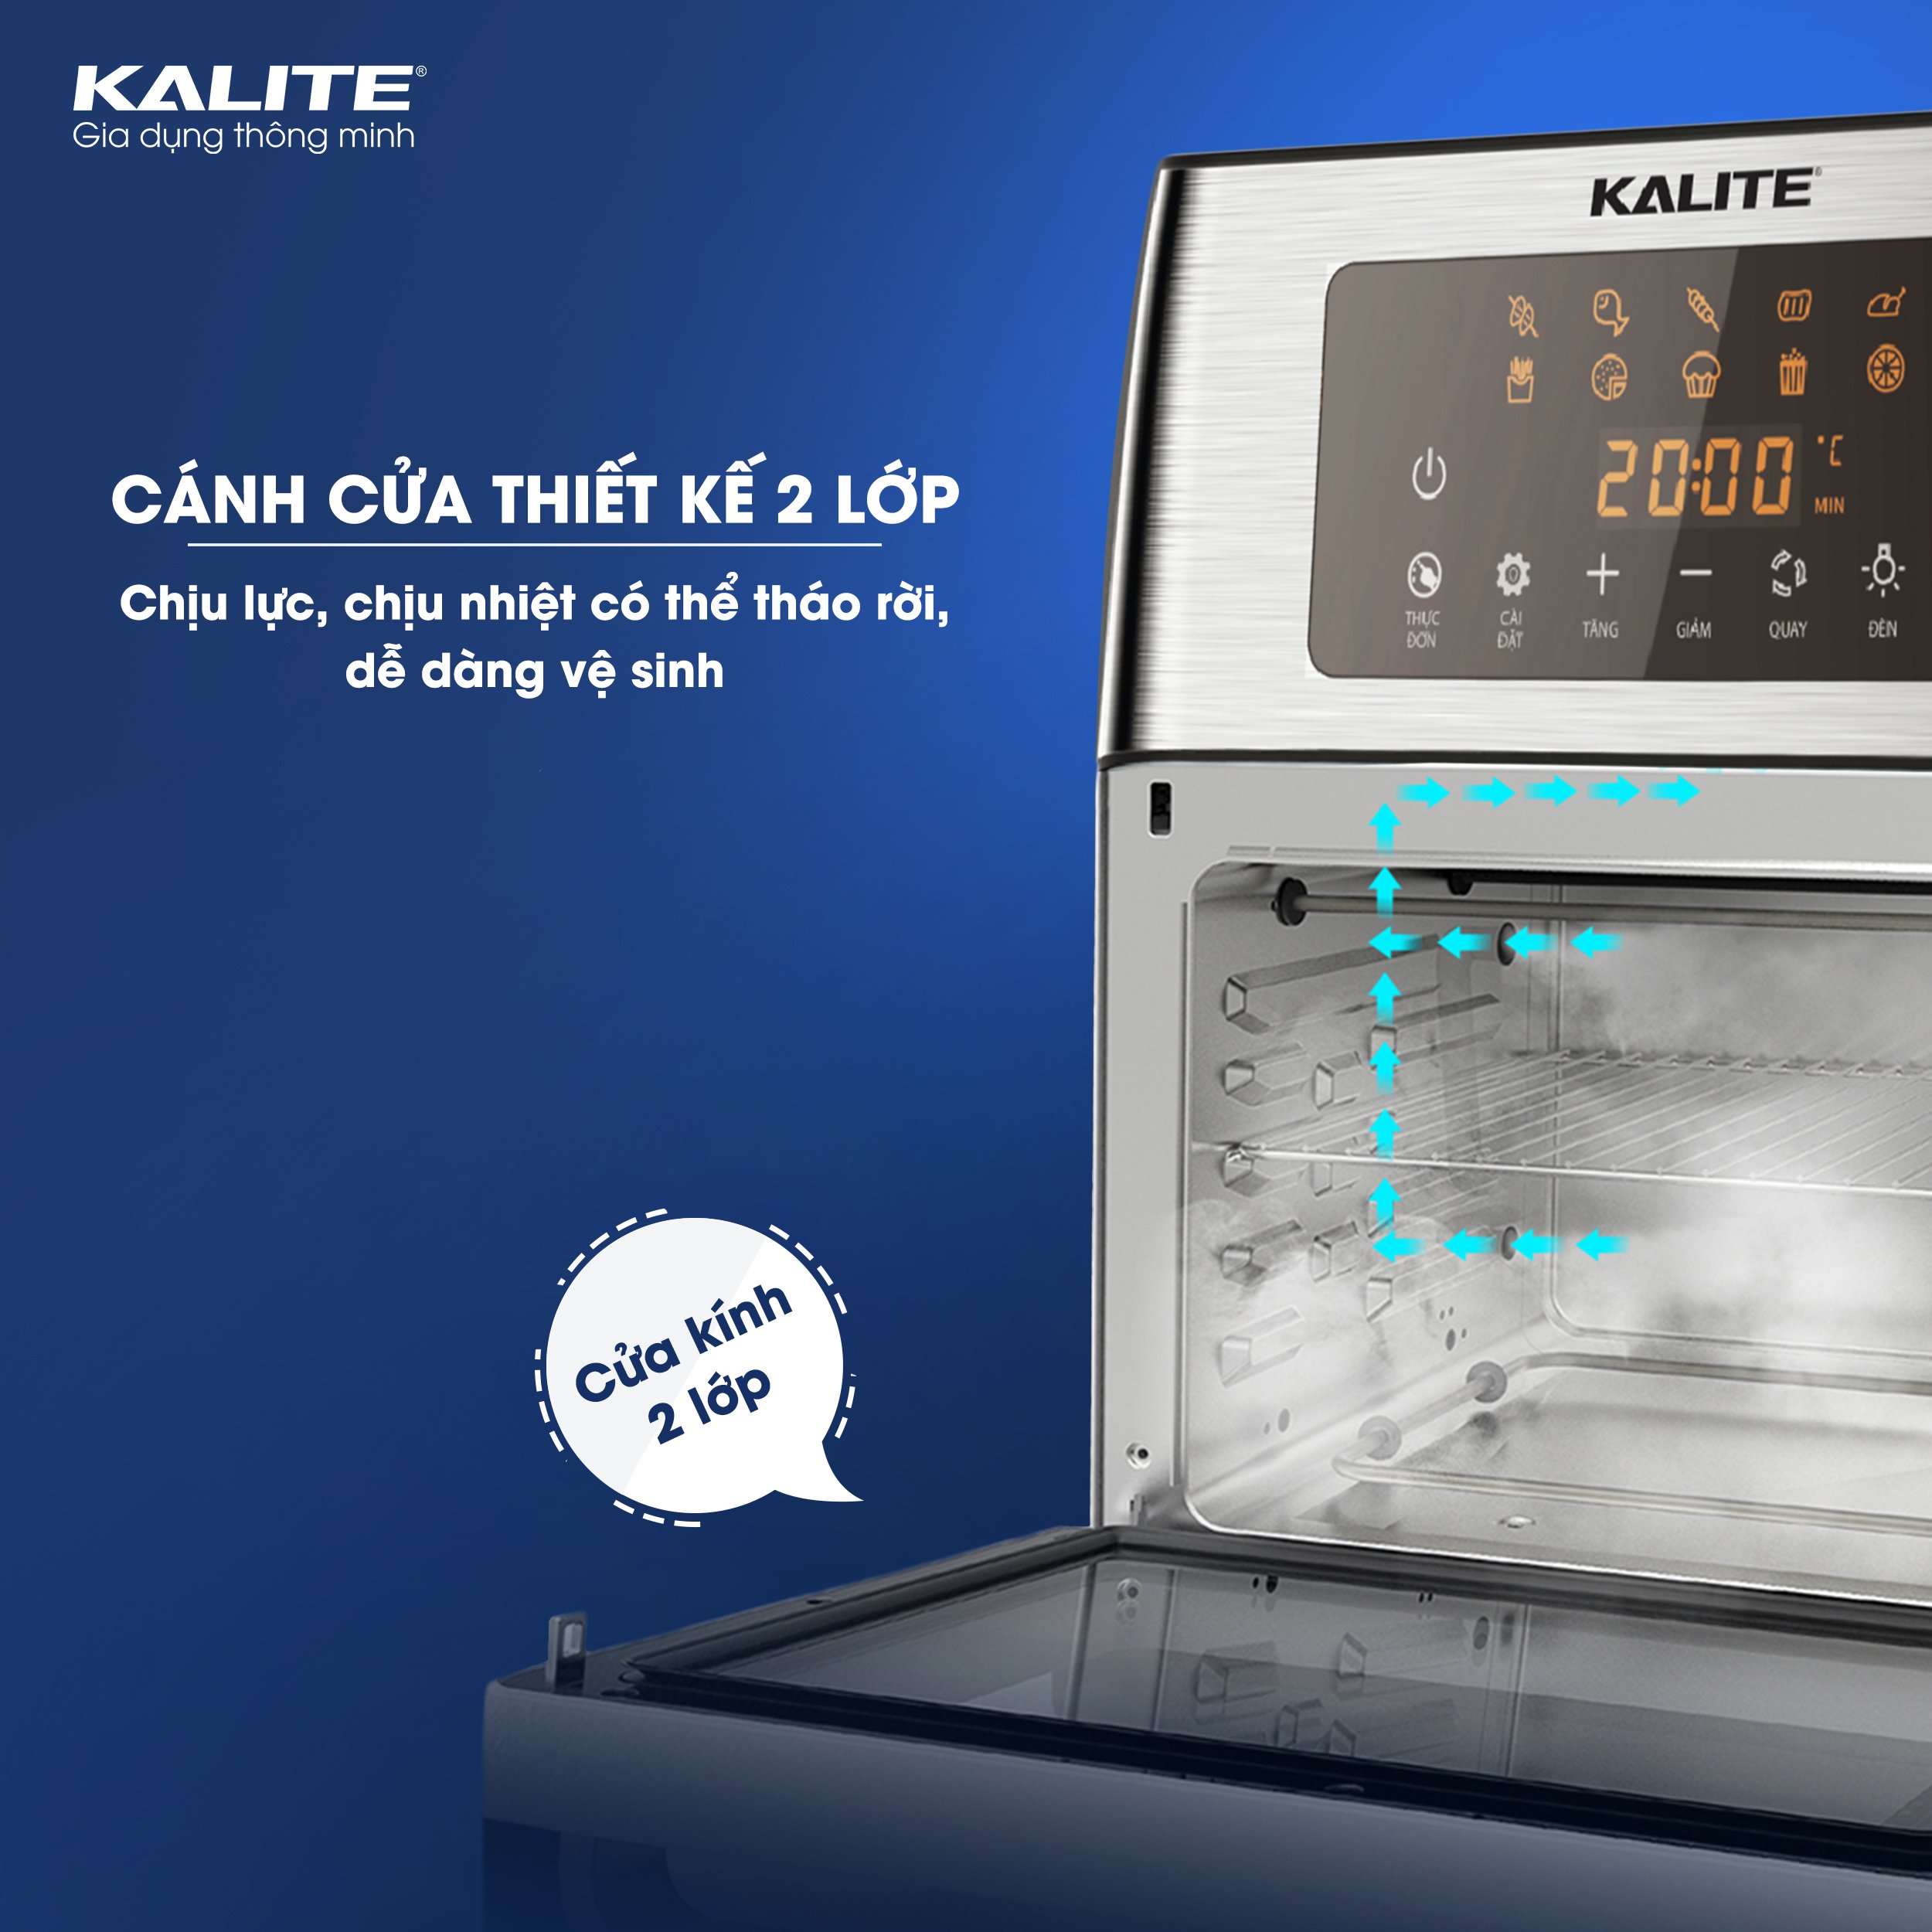 Nồi chiên không dầu Kalite KL-1500setup 10 chức năng chuyên sâu thỏa sức chế biếncông